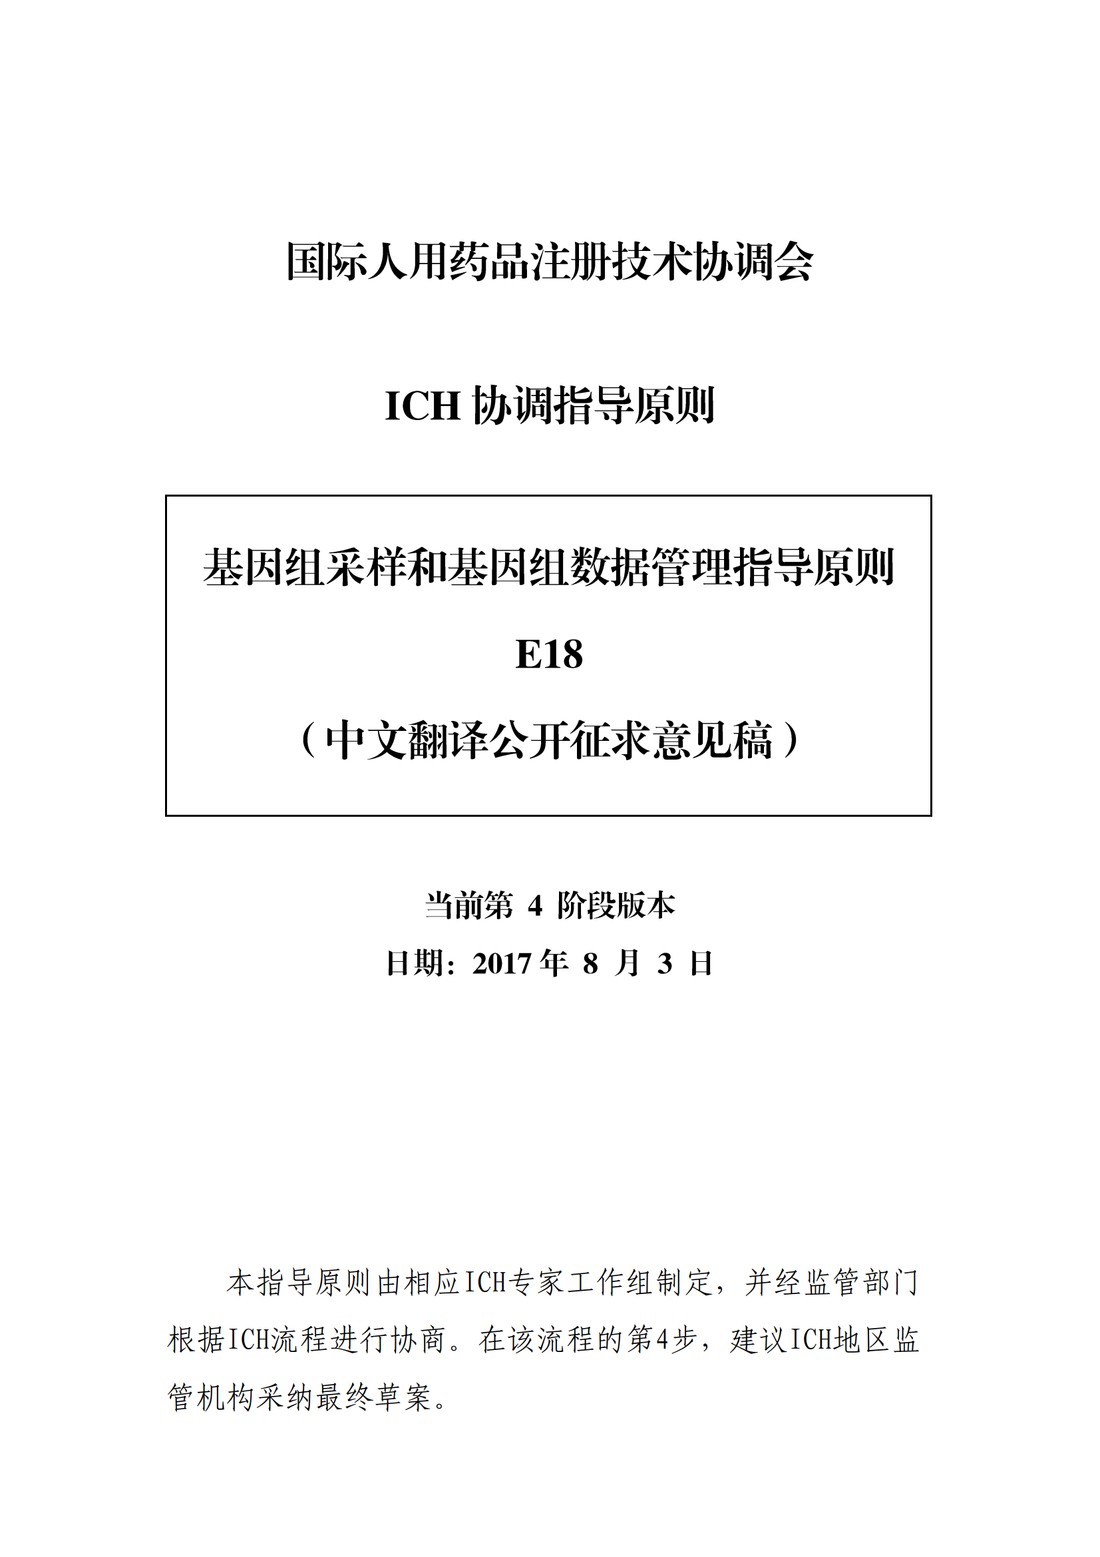 E18：基因组采样和基因组数据管理指导原则（中文翻译公开征求意见稿）_01.jpg